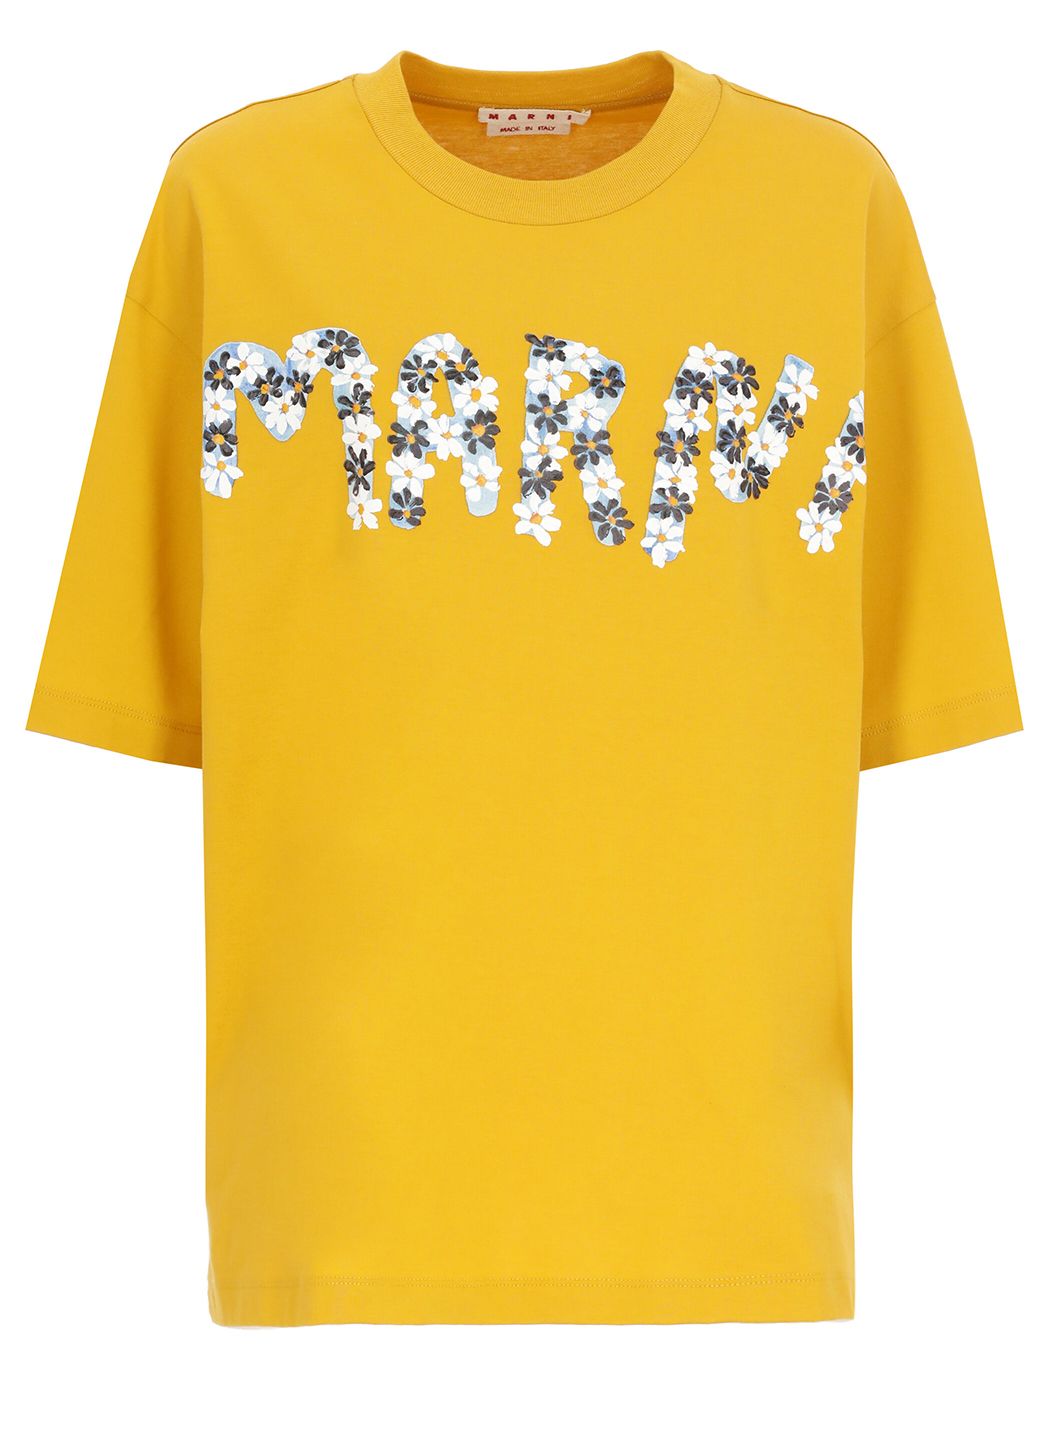 T-shirt with logo Daisy